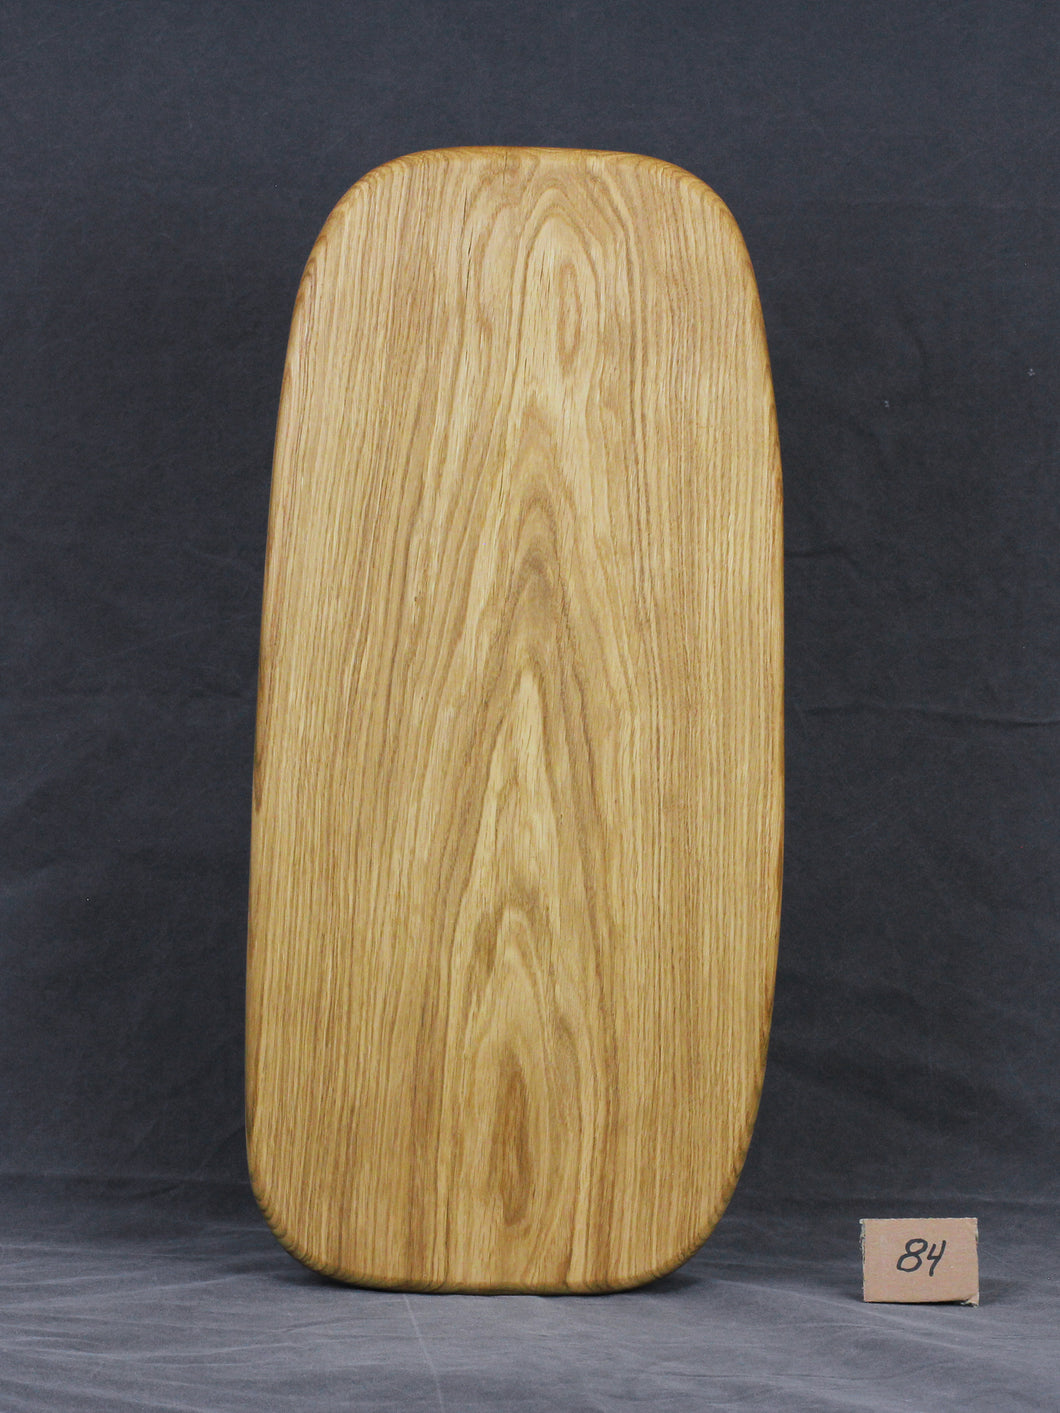 Brotzeitbrett, Servierbrett, Schneidebrett, Cuttingboard, Charcuterie Board. No. 84 - ca. 60 cm. Aus einem Stück Eiche - handgefertigt.